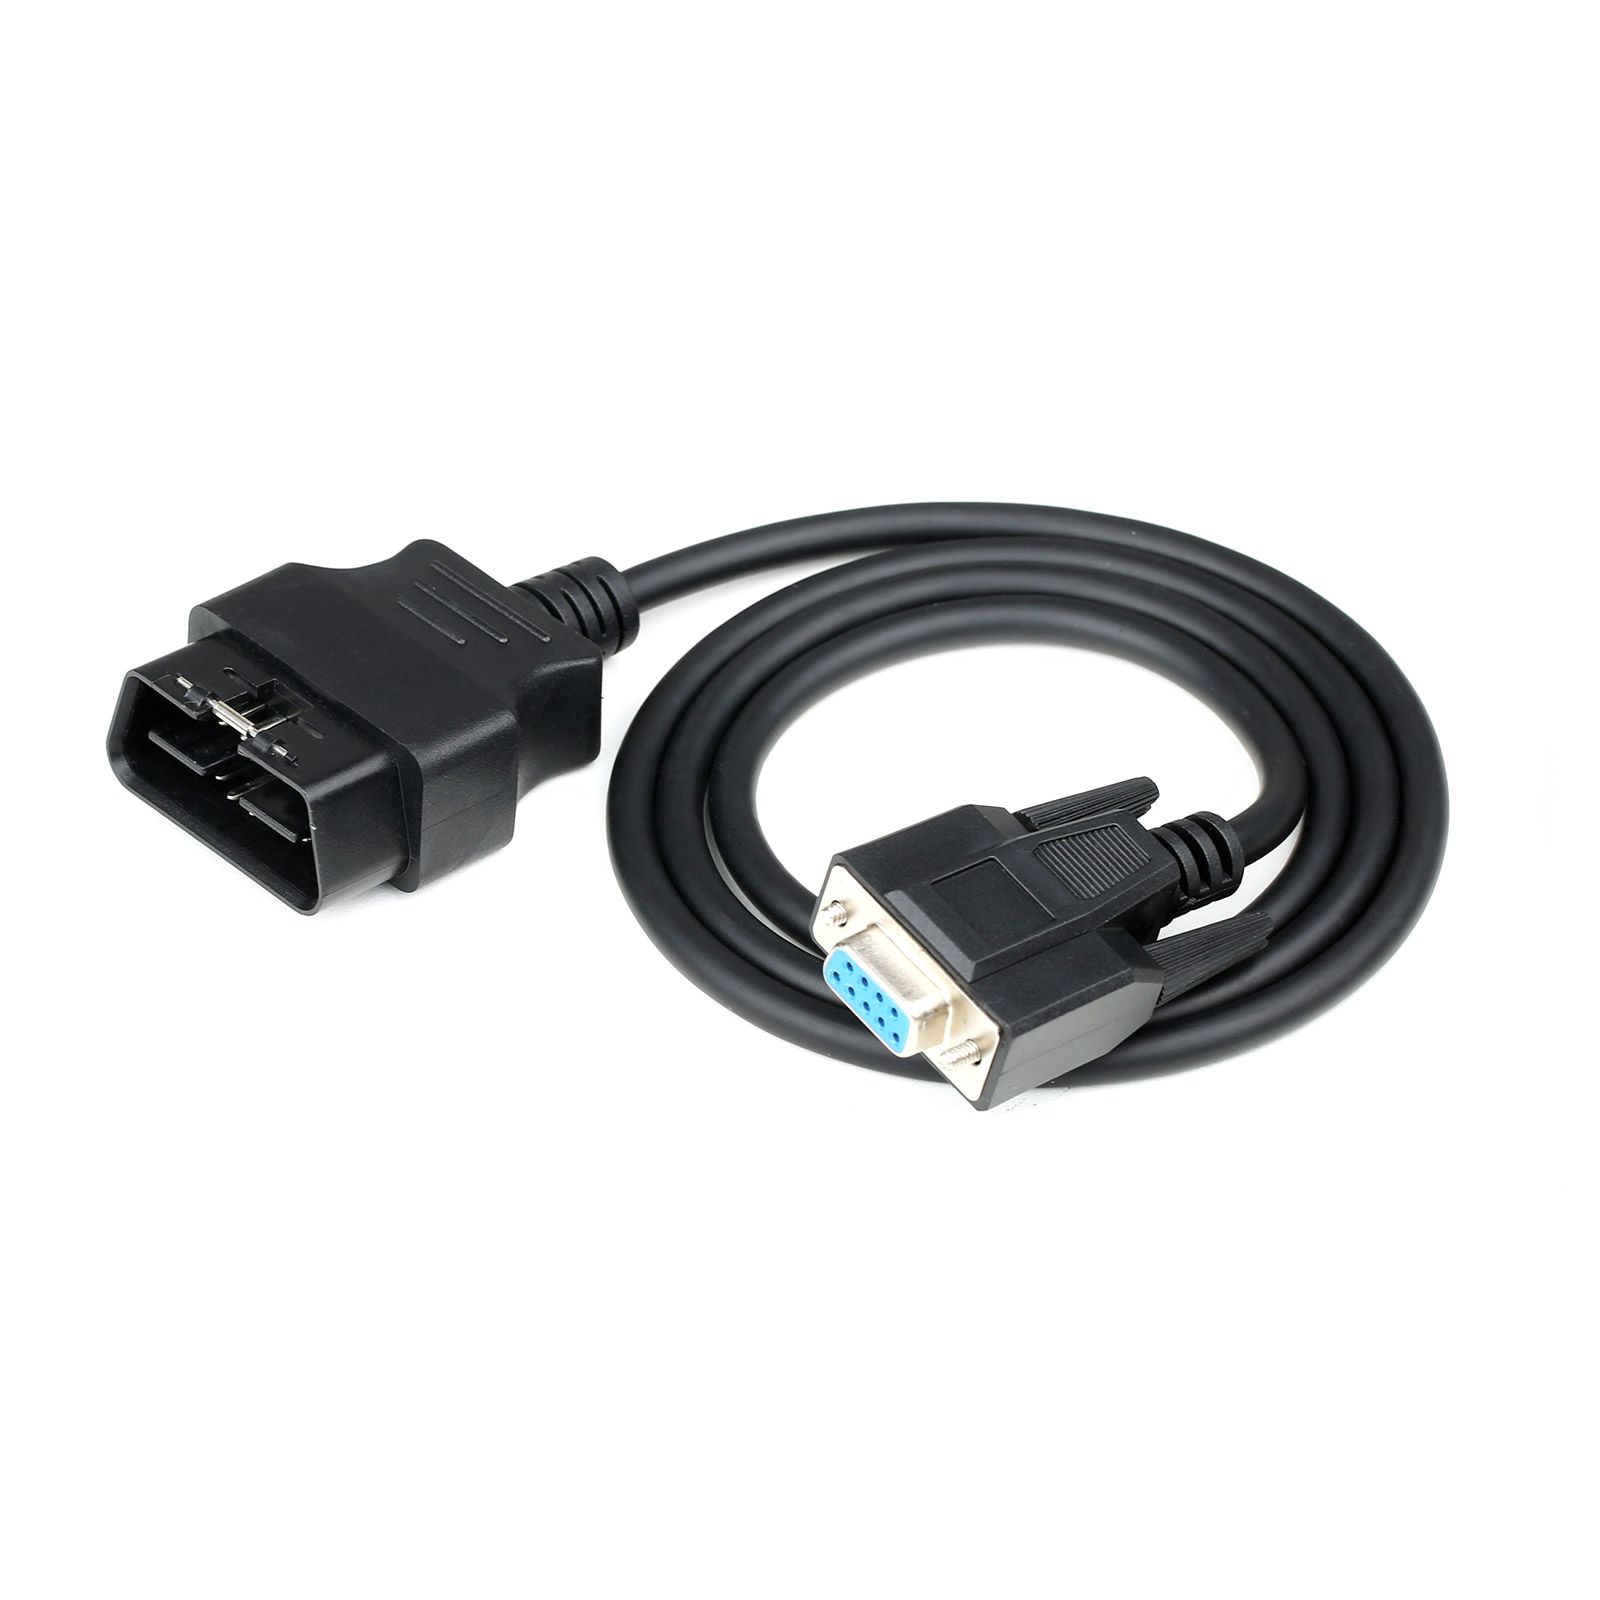 El dispositivo de prueba de la red can del automóvil USB V - can3 está conectado a la red can de alimentación automática de PC y usb.